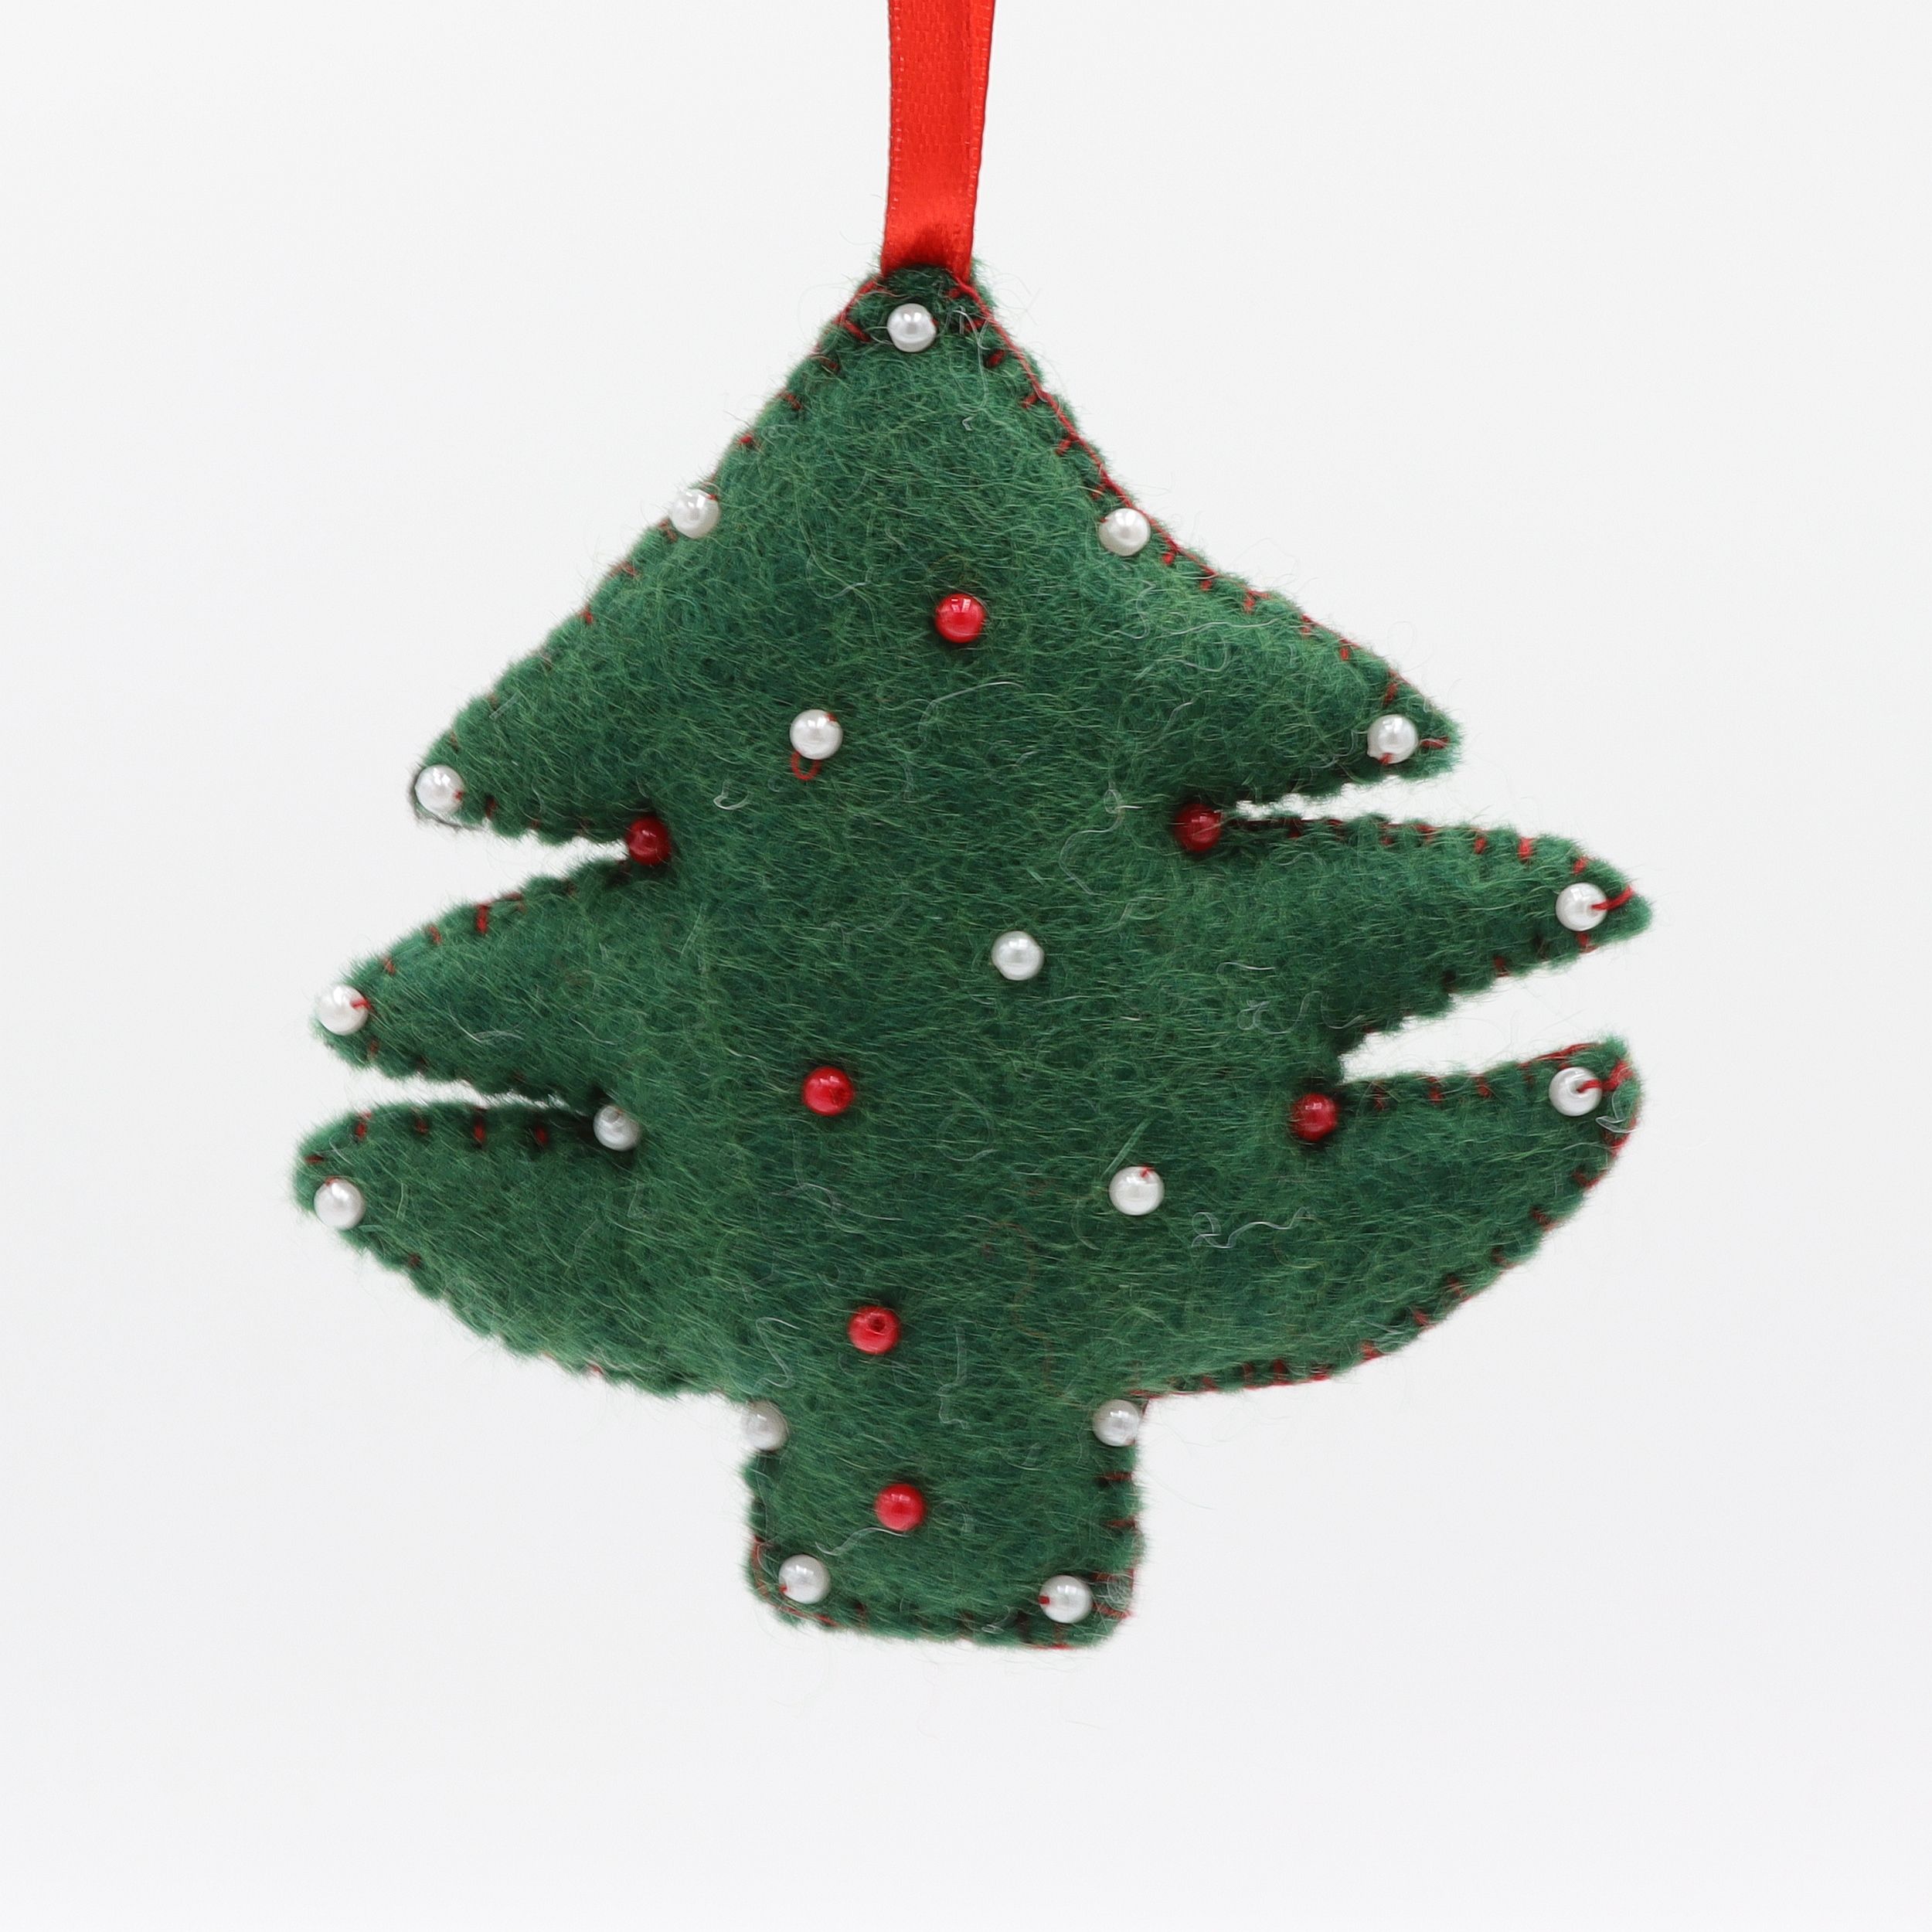 Weihnachtsbaum - Tannenbaum als Weihnachtsschmuck - Anhänger aus Filz - Geschenkanhänger oder Baumschmuck - echte Handarbeit und fair gehandelt